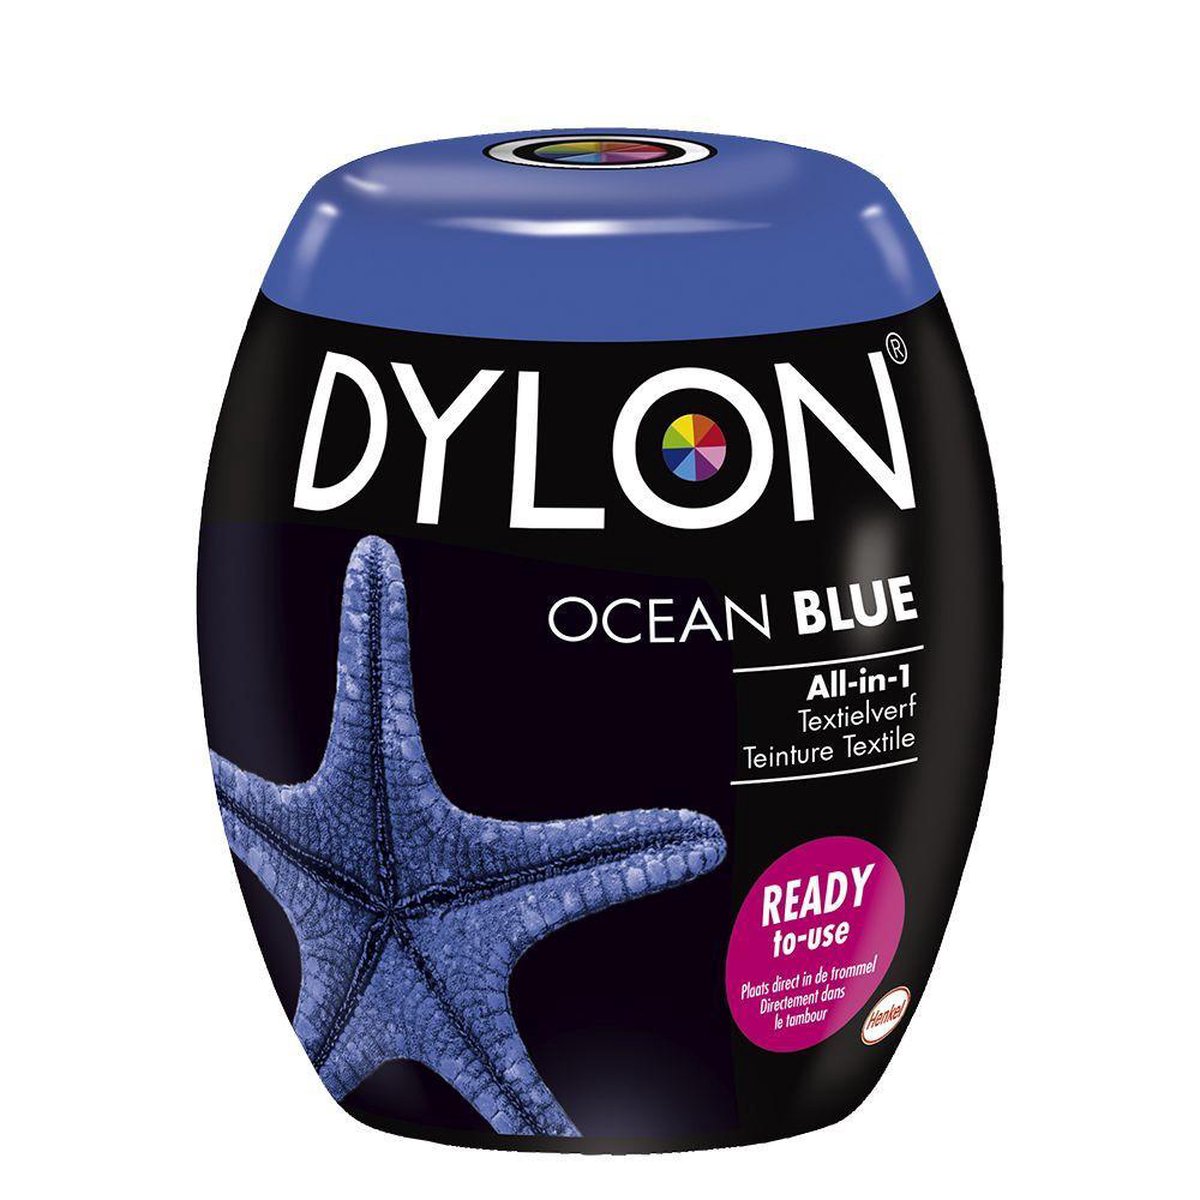 Dylon Wasmachine Textielverf Pods - Ocean Blue 350g